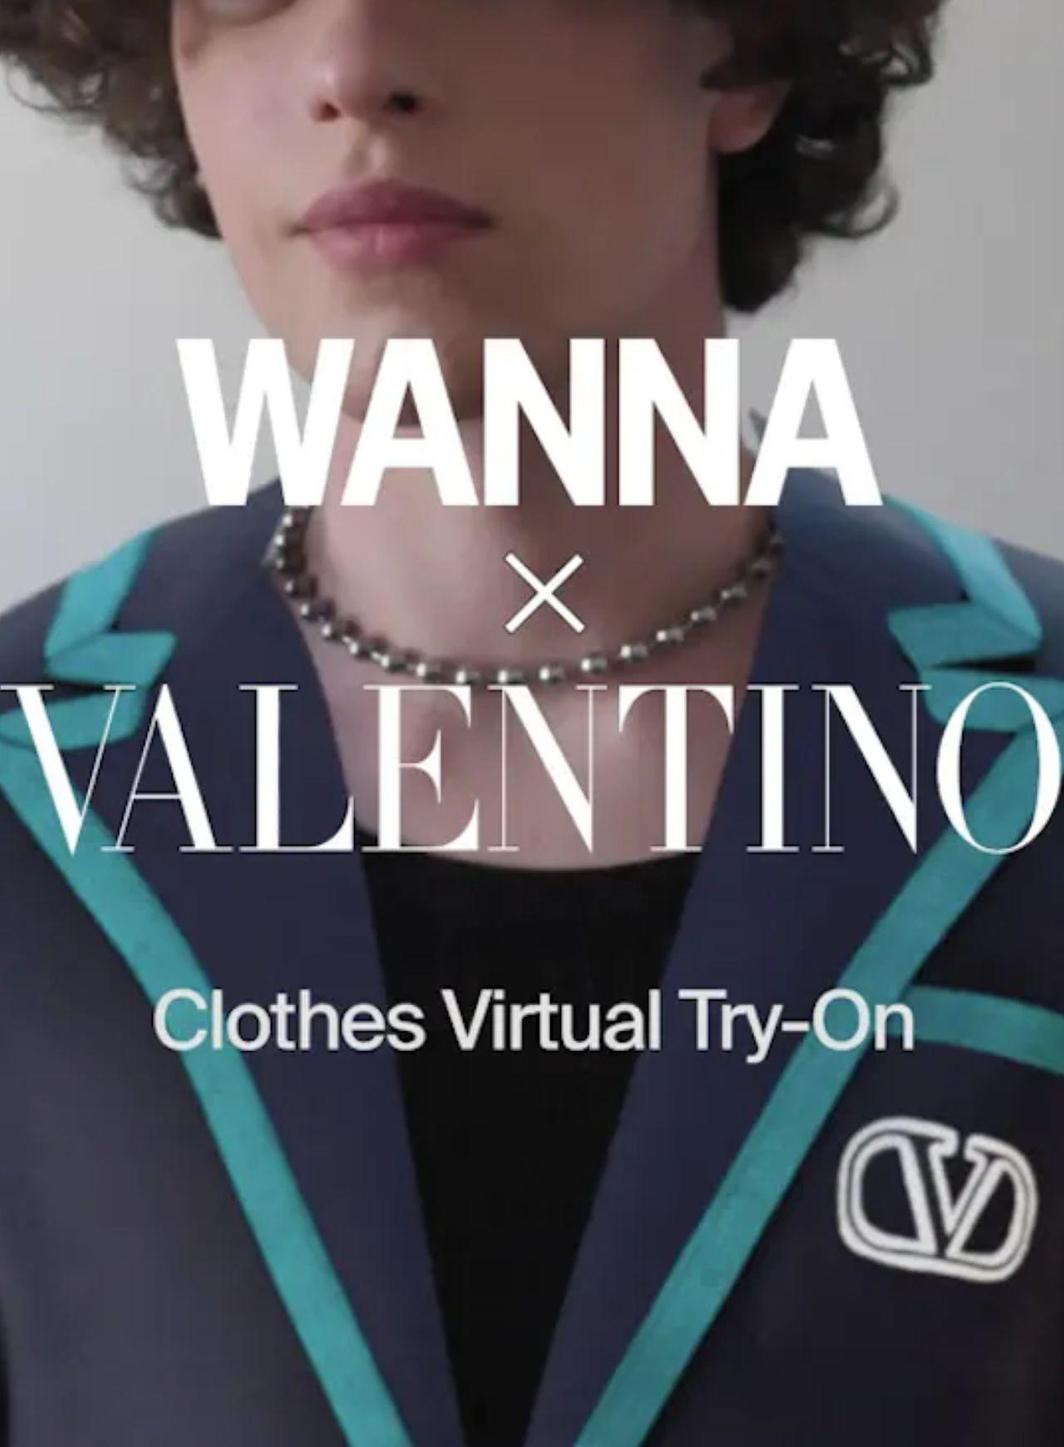 La Maison Valentino propose une expérience exclusive d’essayage virtuel avec Wanna.